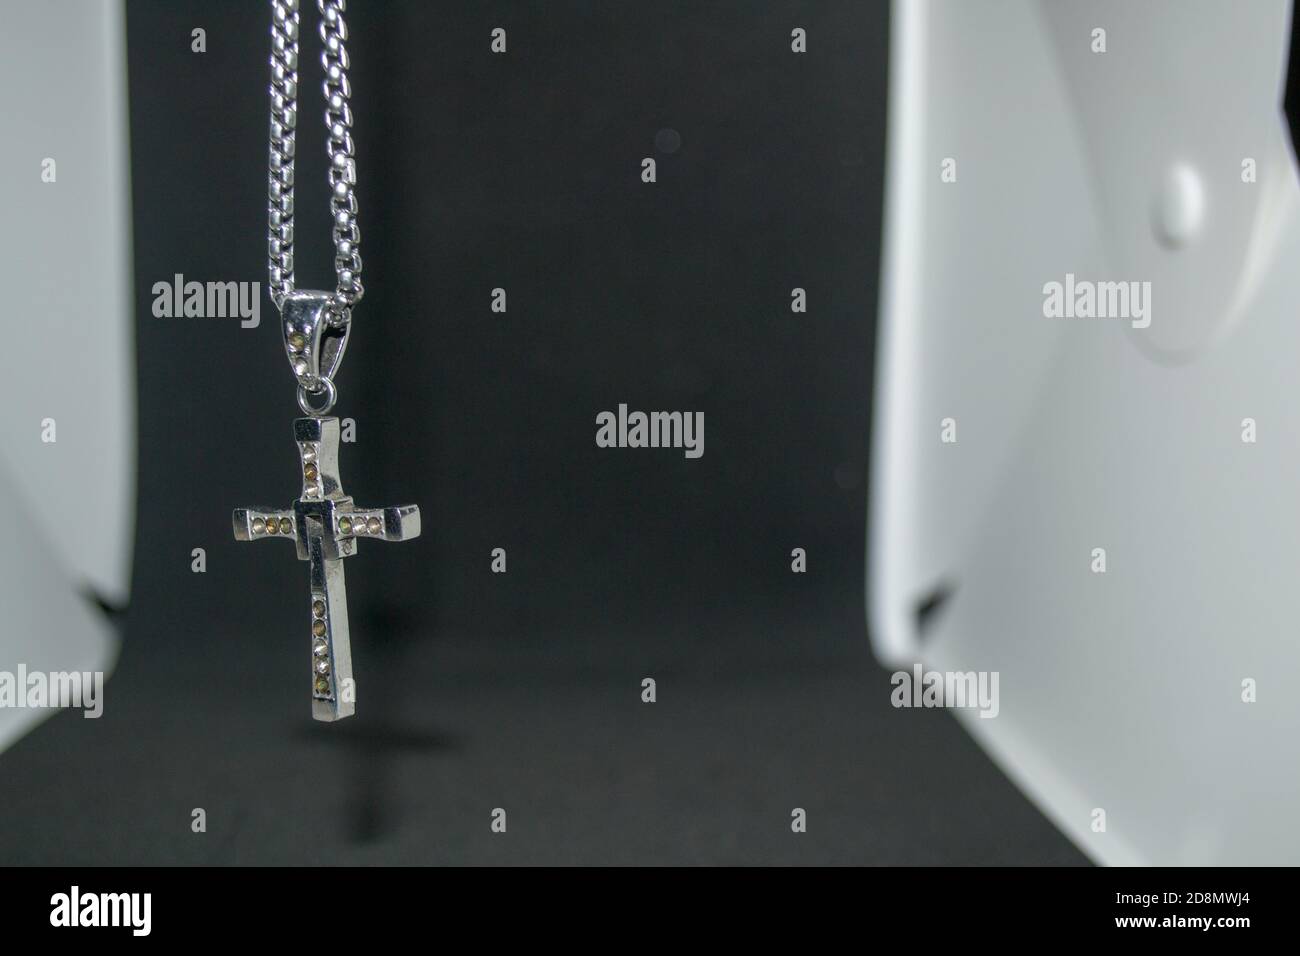 Nahaufnahme eines silbernen Metall christian Kreuz Halskette / Anhänger oder Silber Metall Kruzifix Halskette / Anhänger auf einem schwarz-weiß hängen Hintergrund Stockfoto